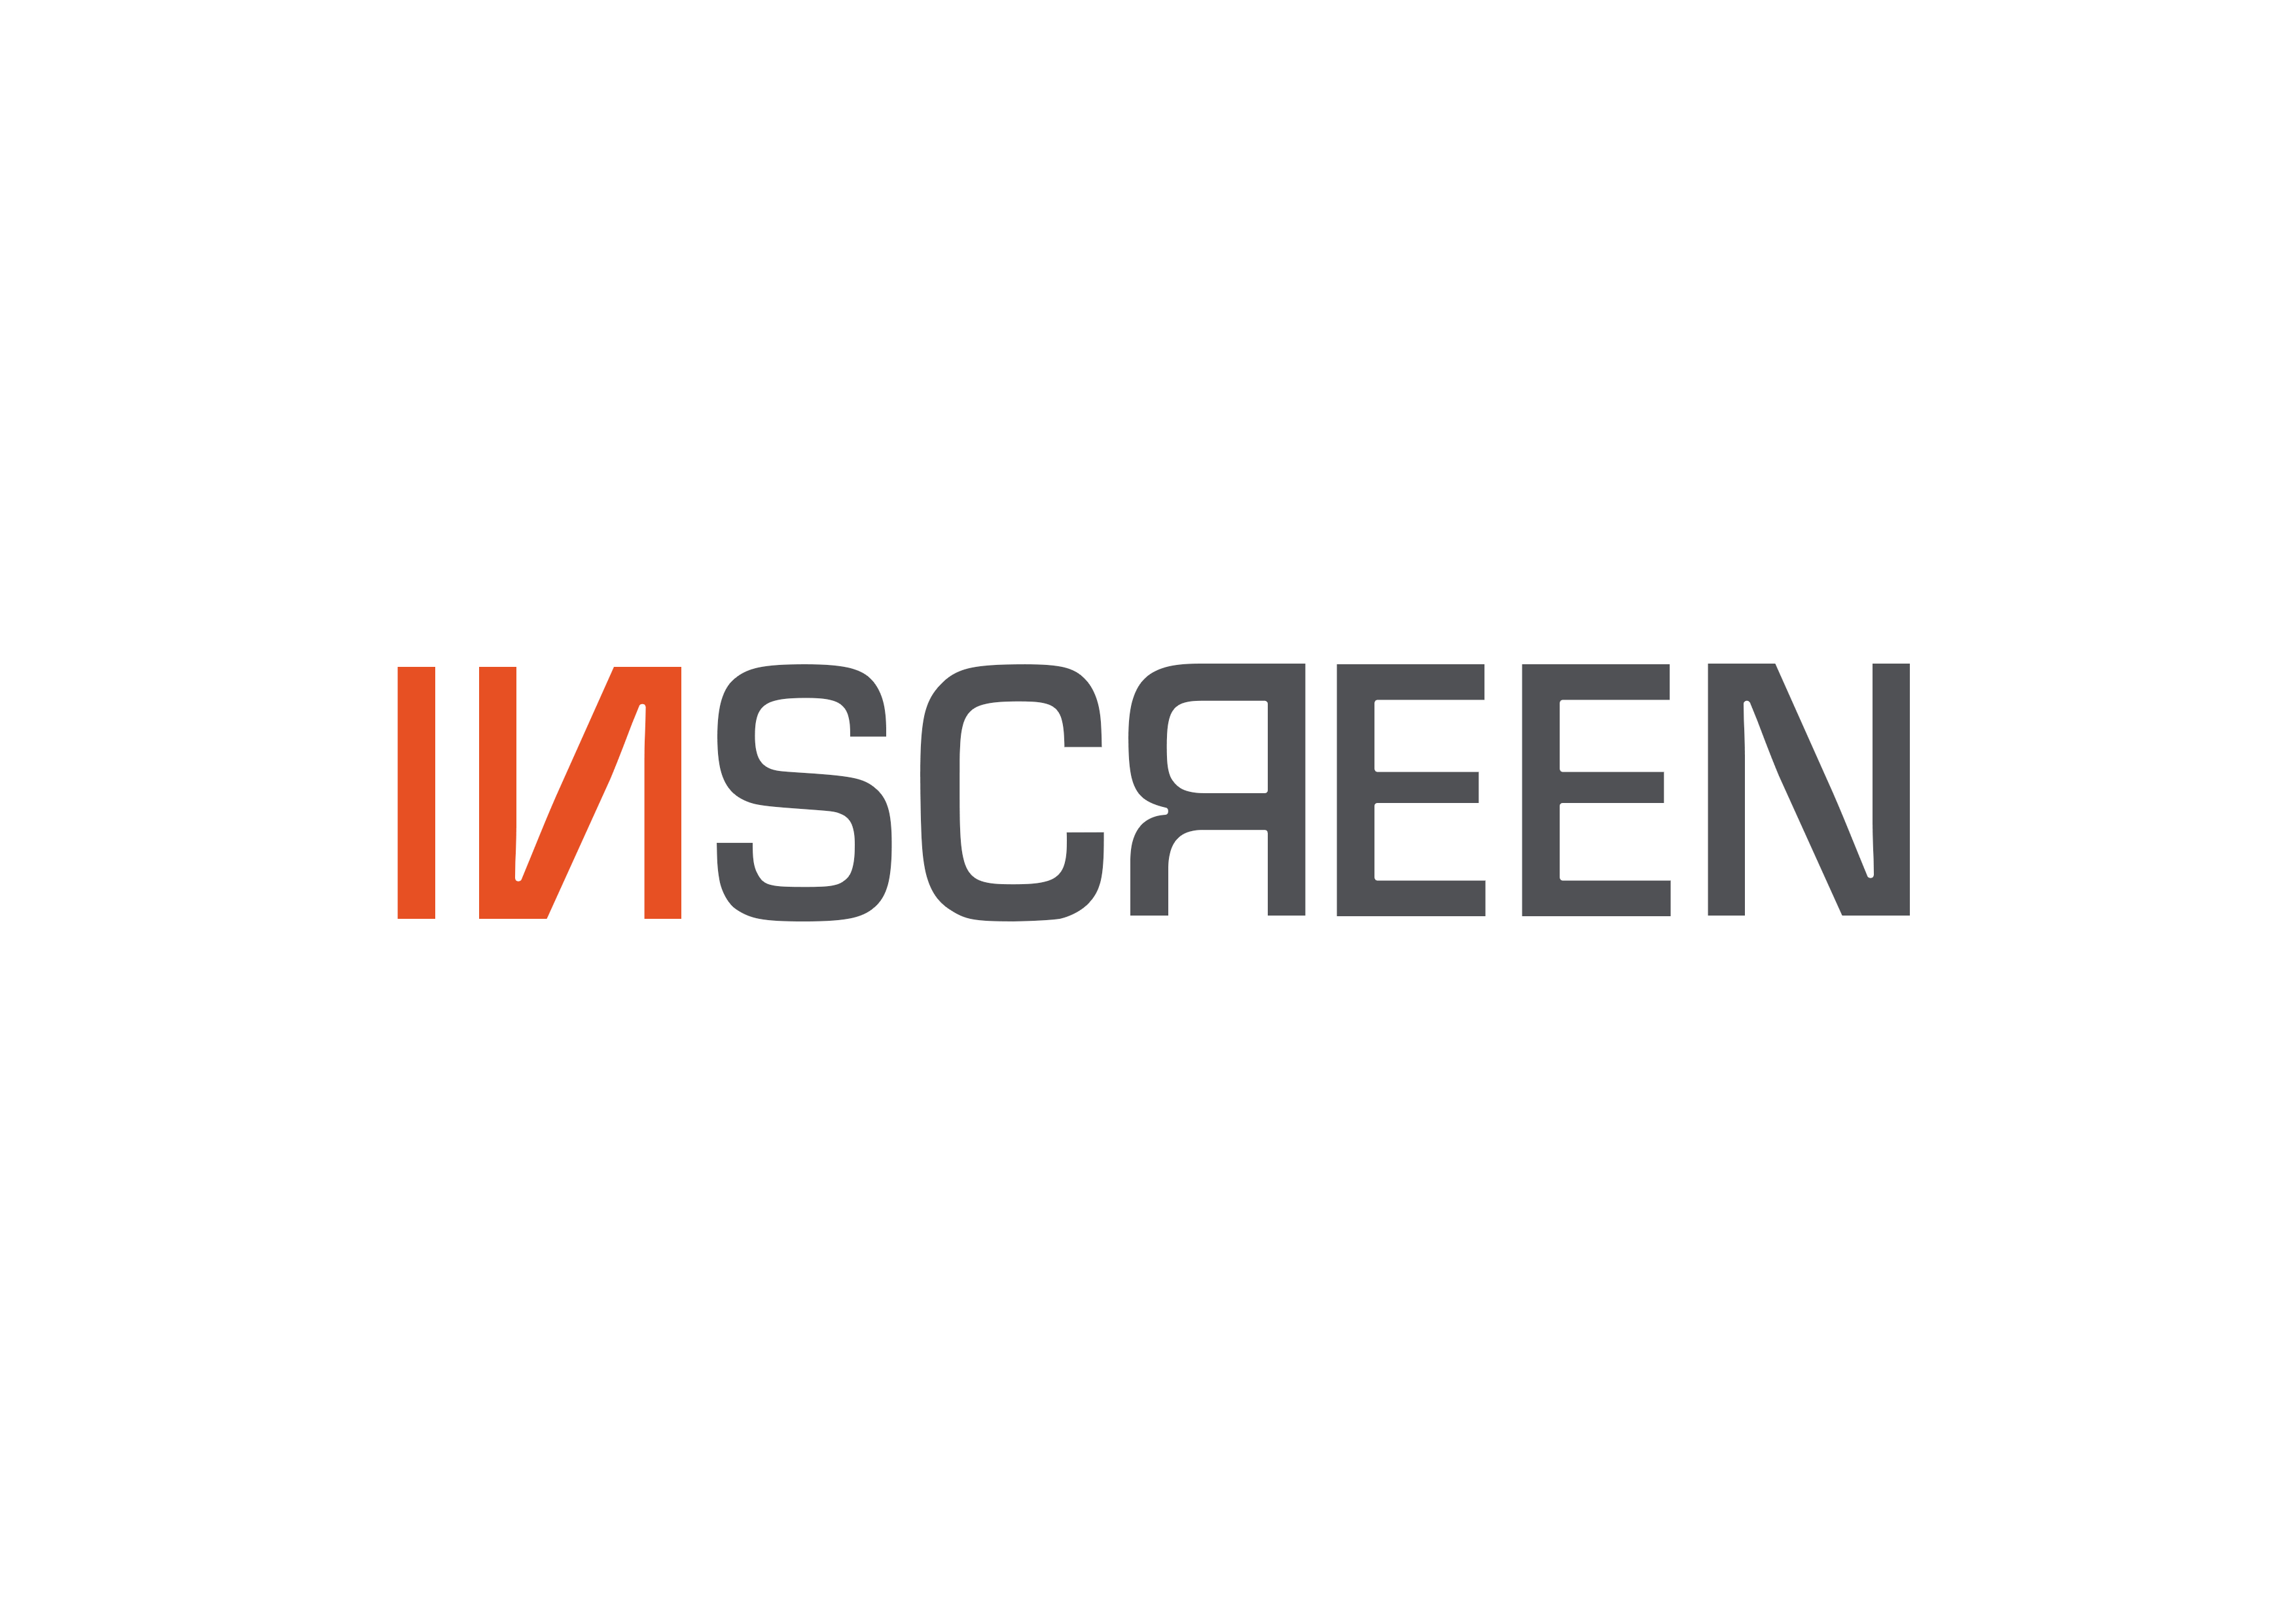 inscreen main logo